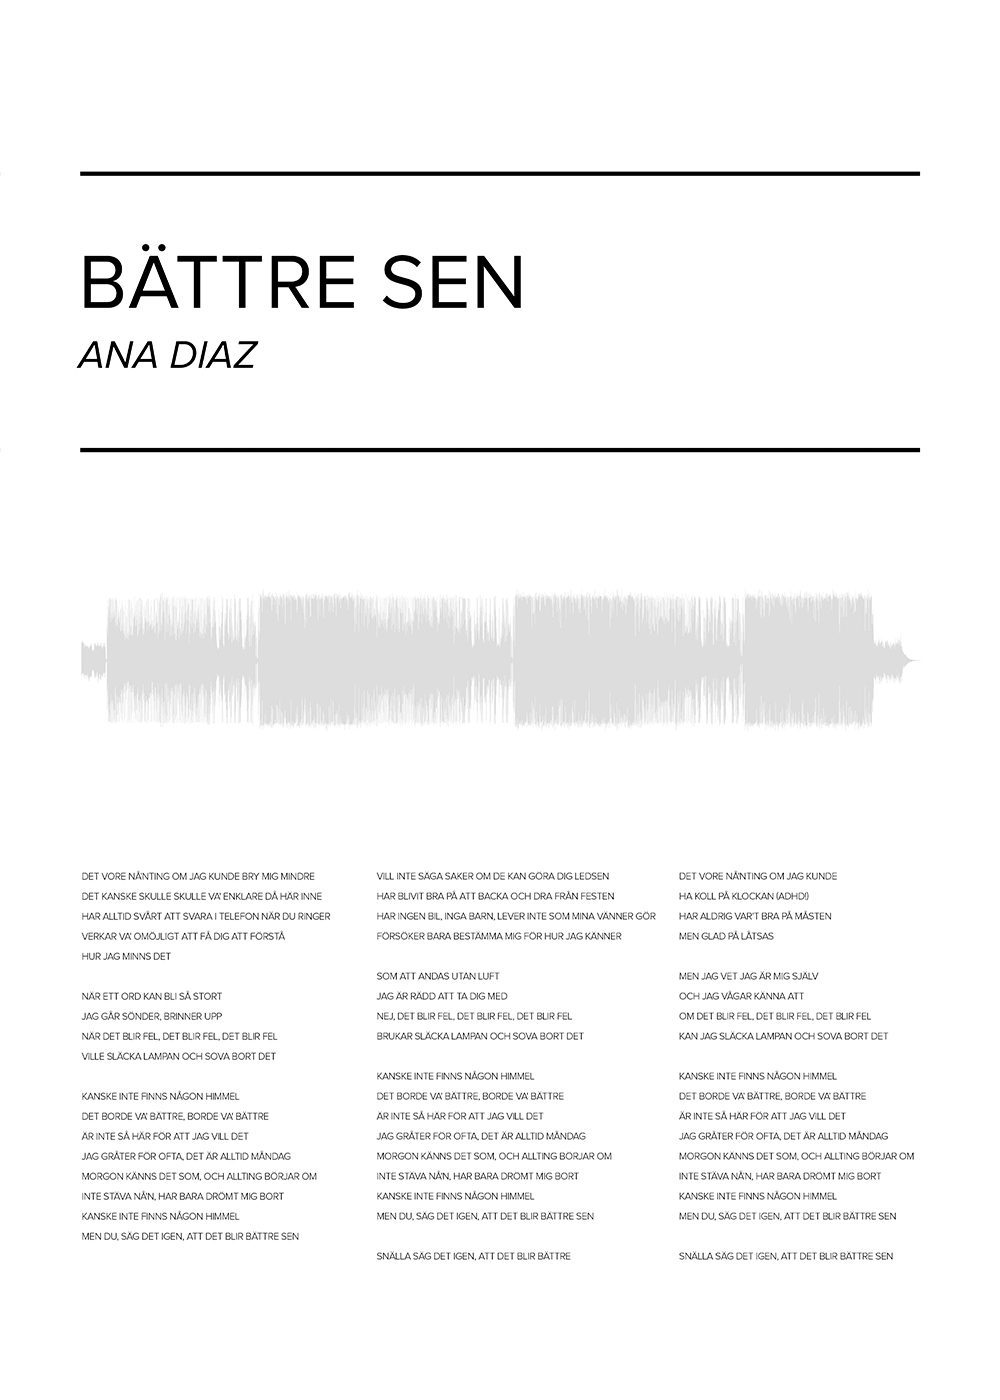 Ana Diaz - Bättre sen Poster